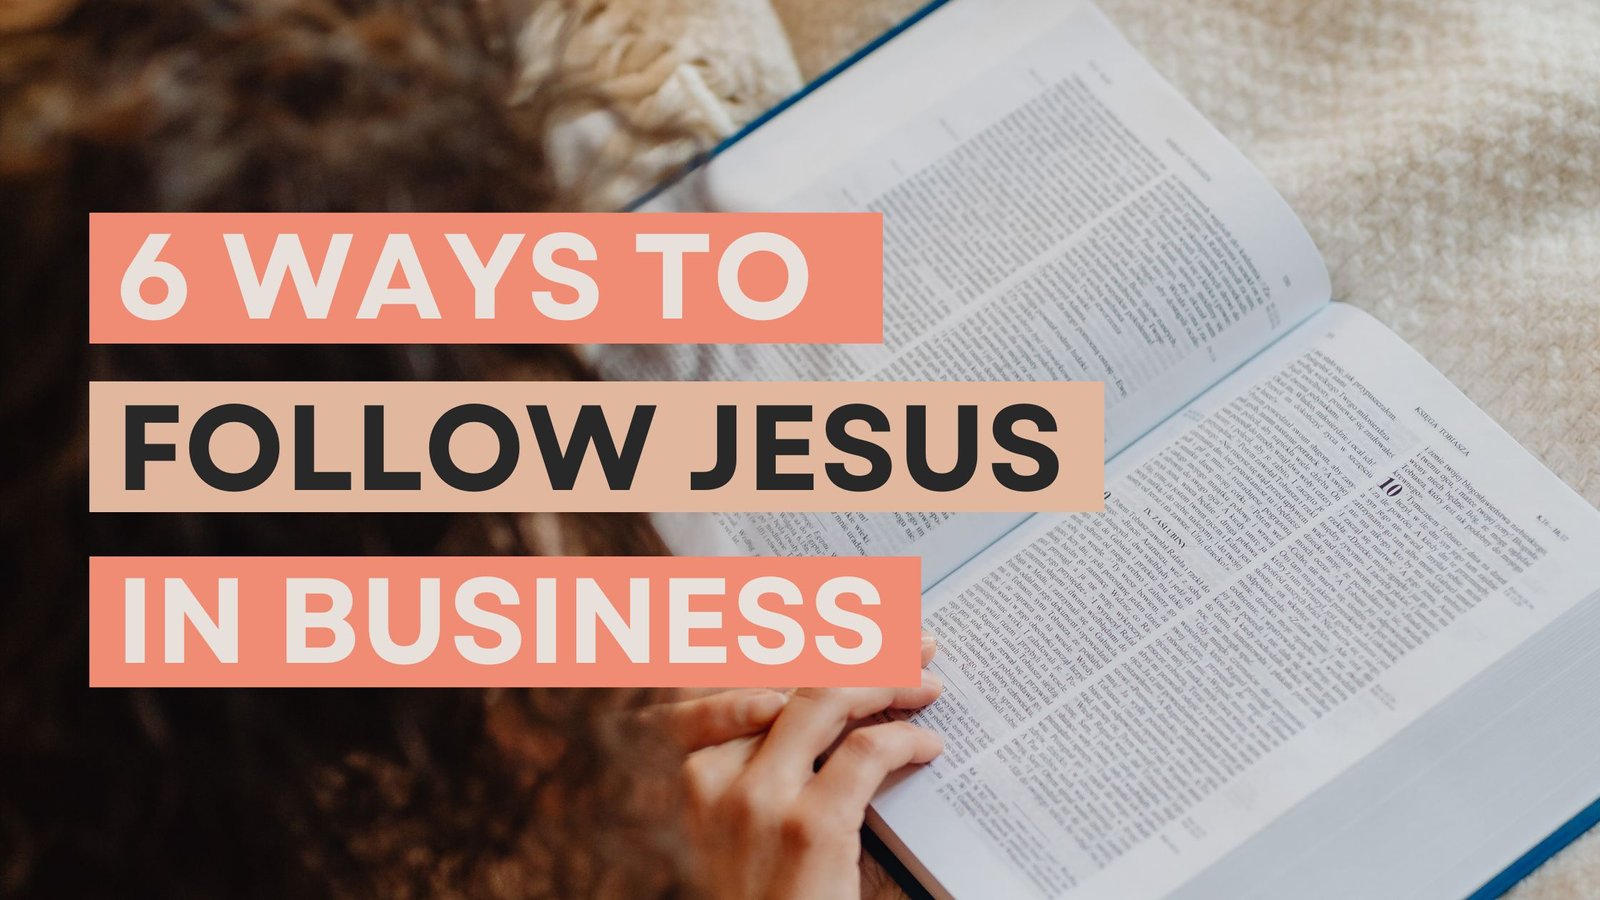 Follow Jesus in Business